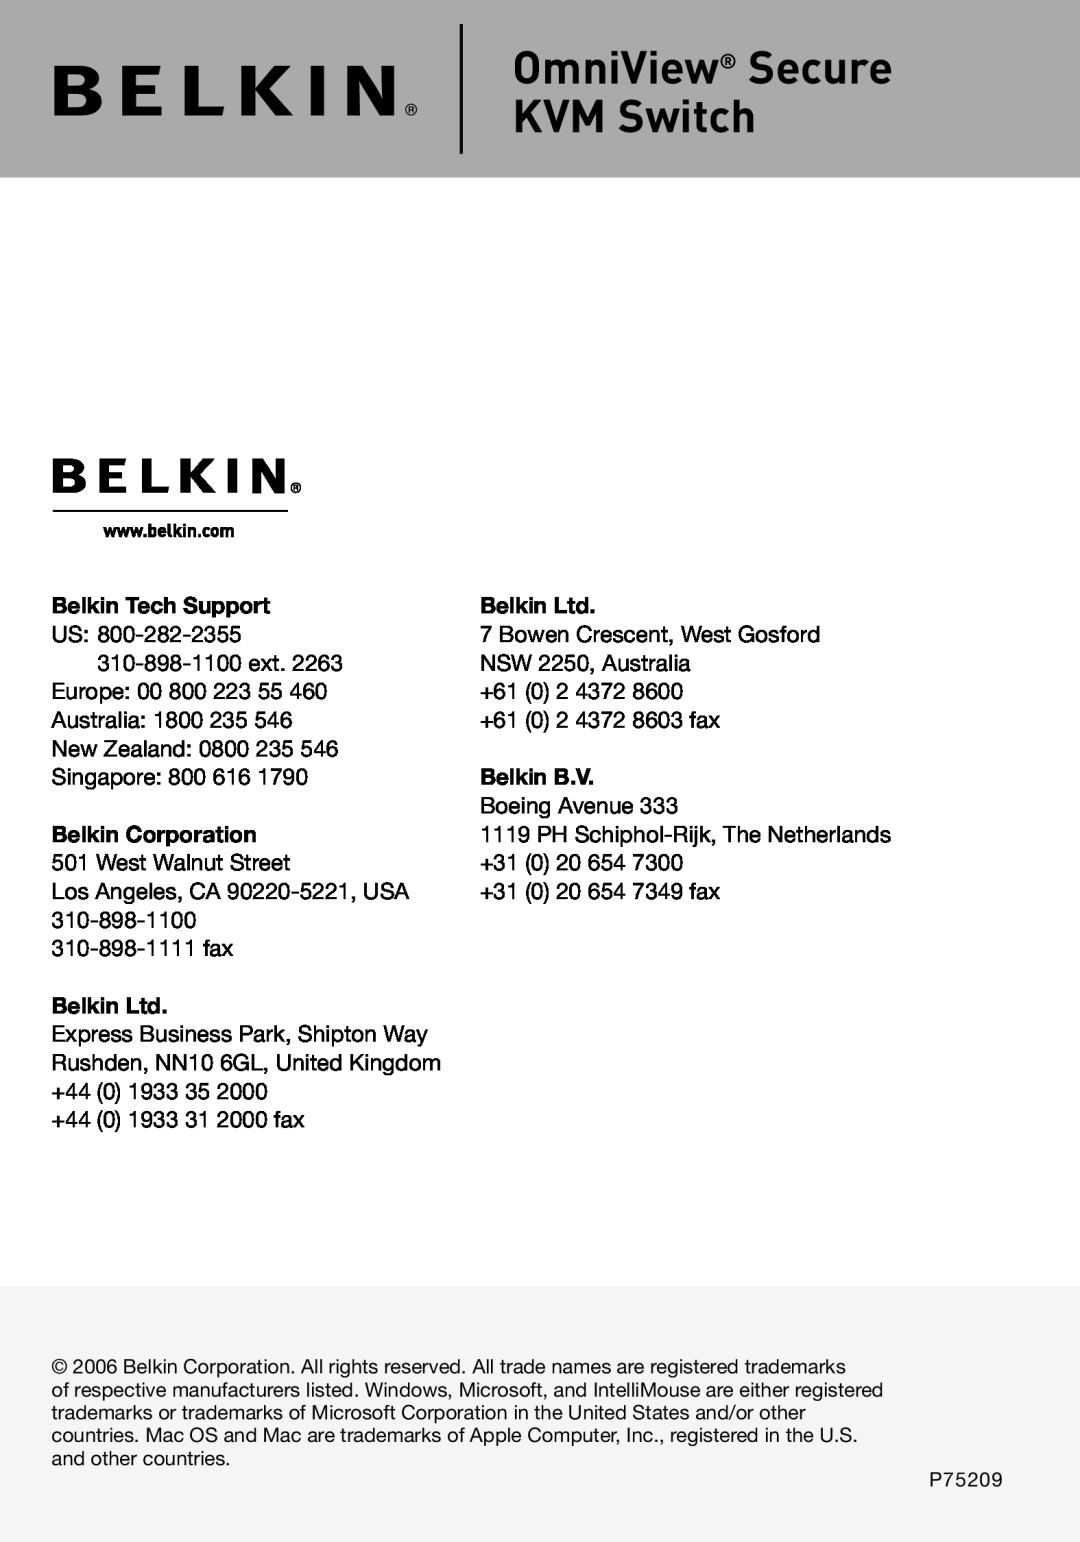 Belkin P75209 manual OmniView Secure KVM Switch, Belkin Tech Support, Belkin B.V, Belkin Corporation 